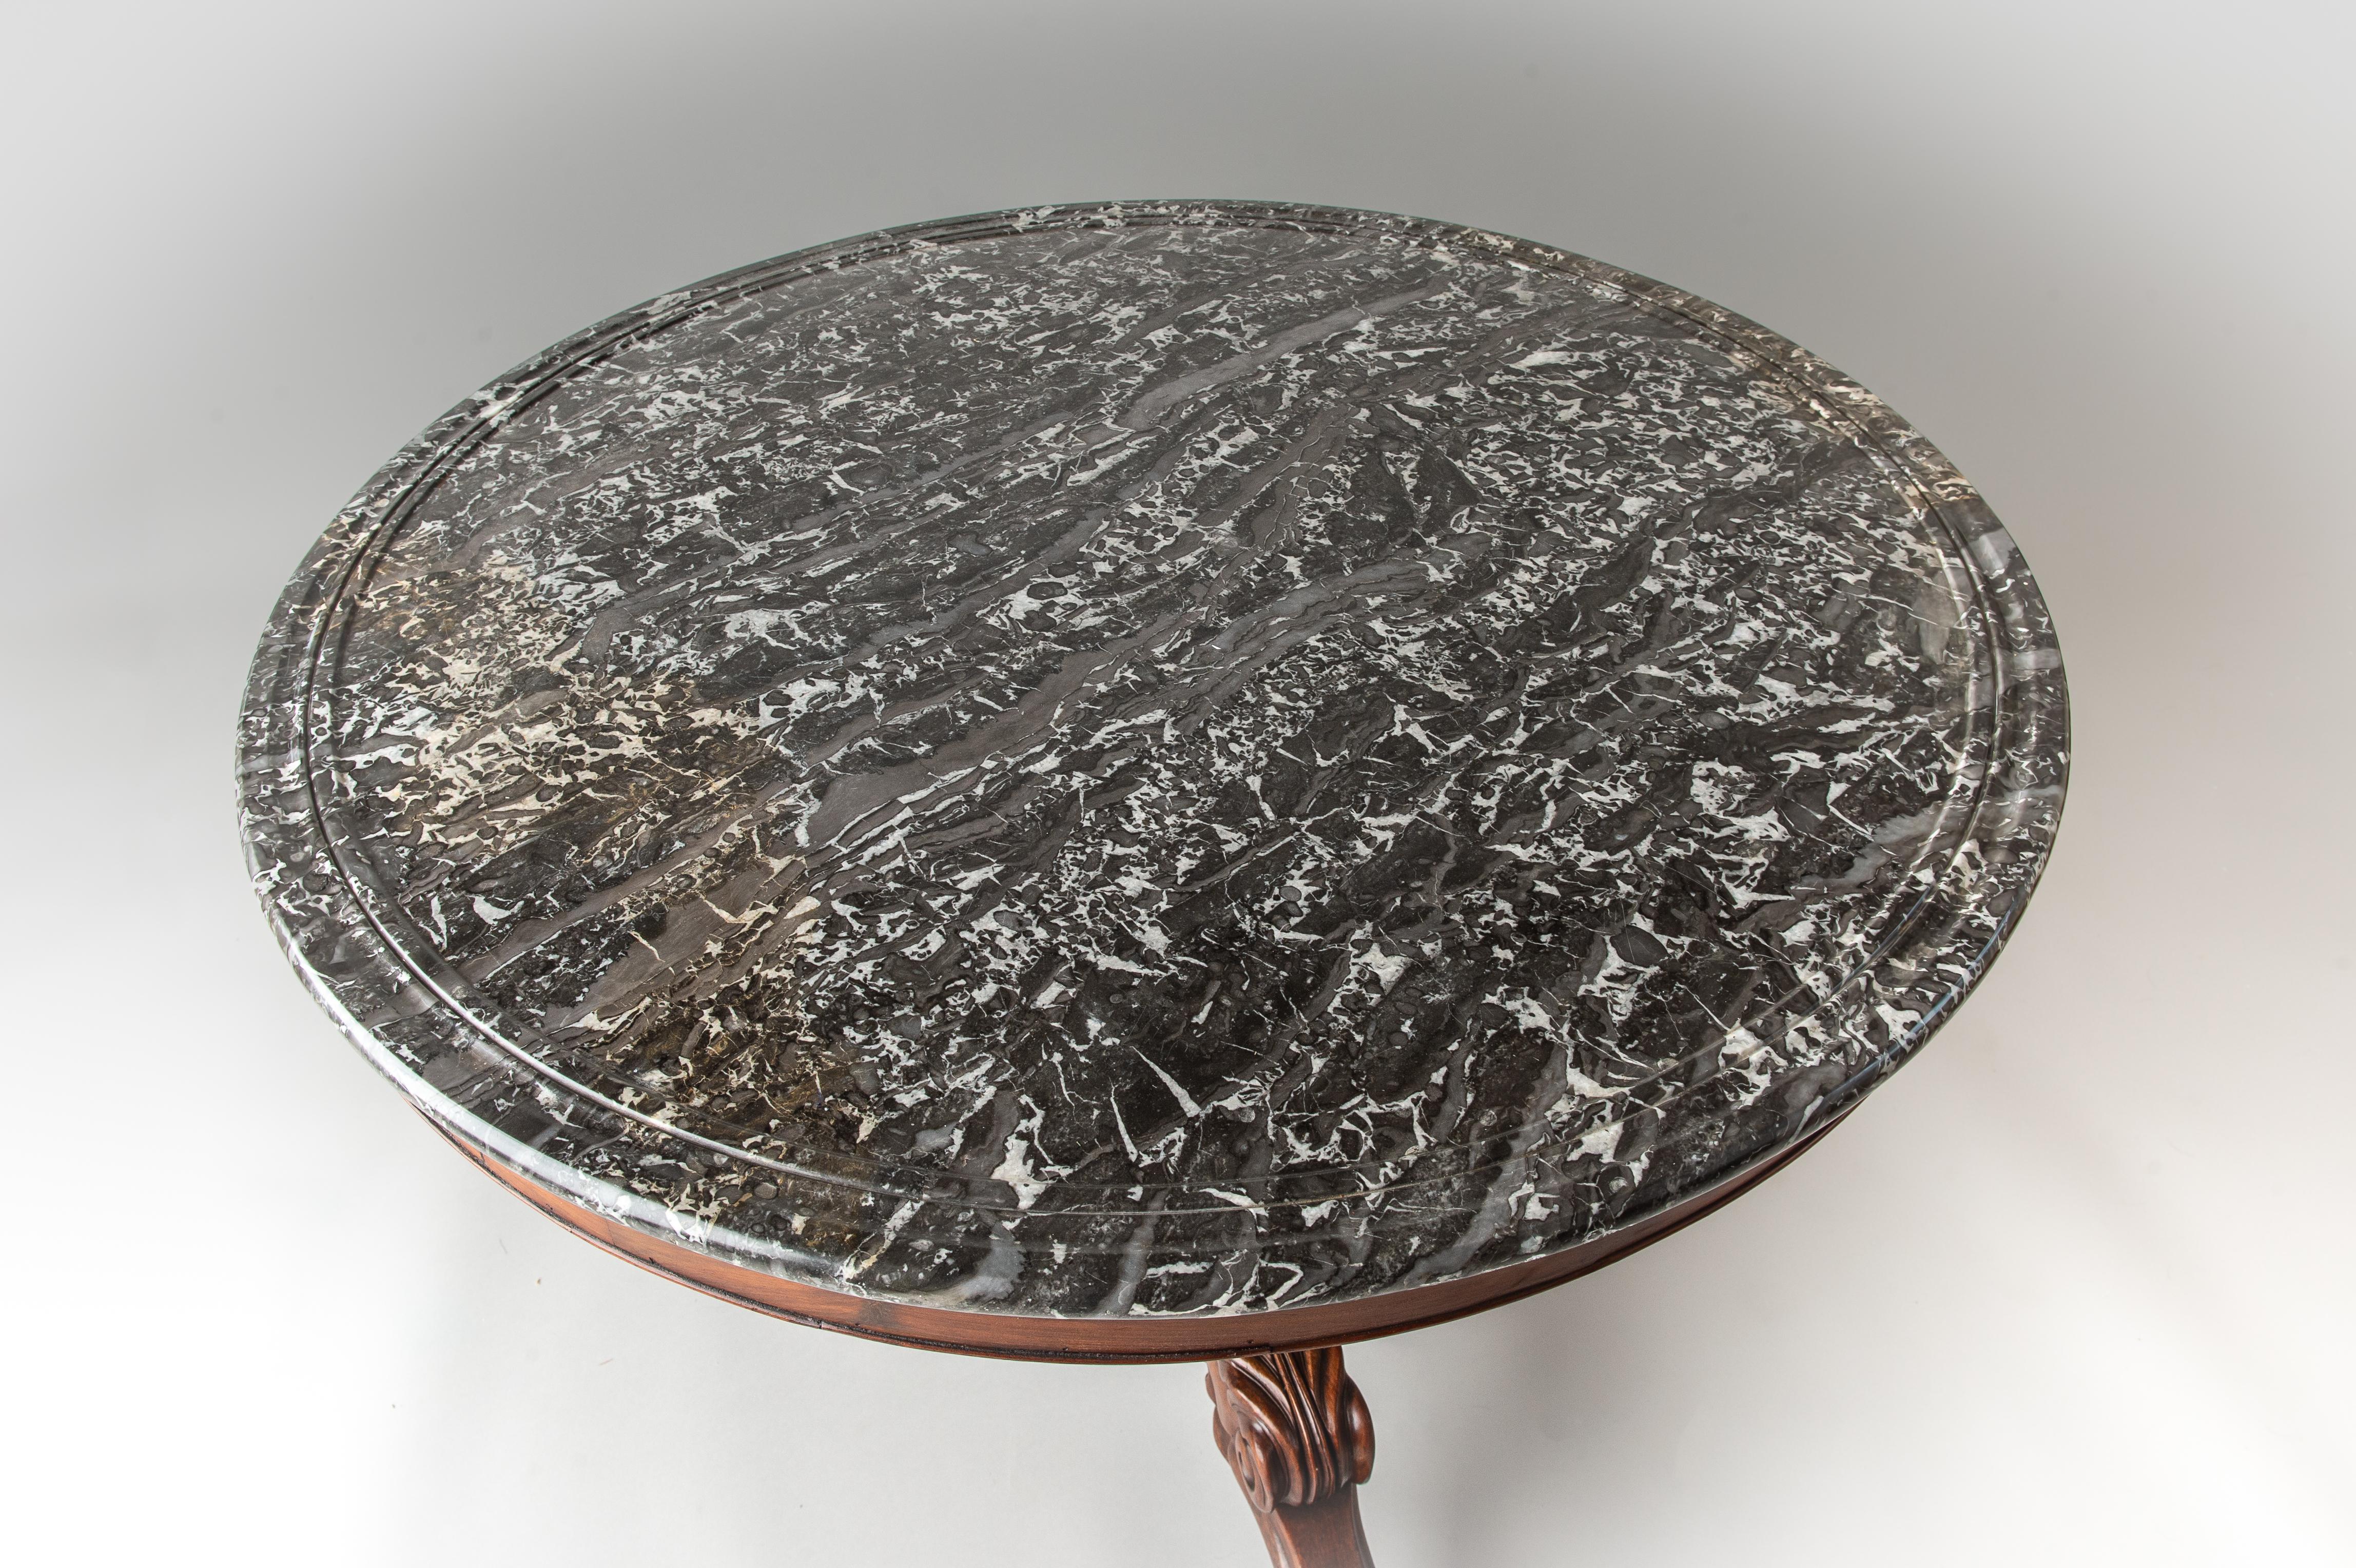 Ein französischer Gueridion-Tisch mit Marmorplatte aus dem frühen 19. Jahrhundert, bei dem die ursprüngliche Marmorplatte mit ihrem geformten Rand erhalten ist. Der Tisch hat einen Sockel aus kubanischem Mahagoni mit einer geriffelten Vasensäule und